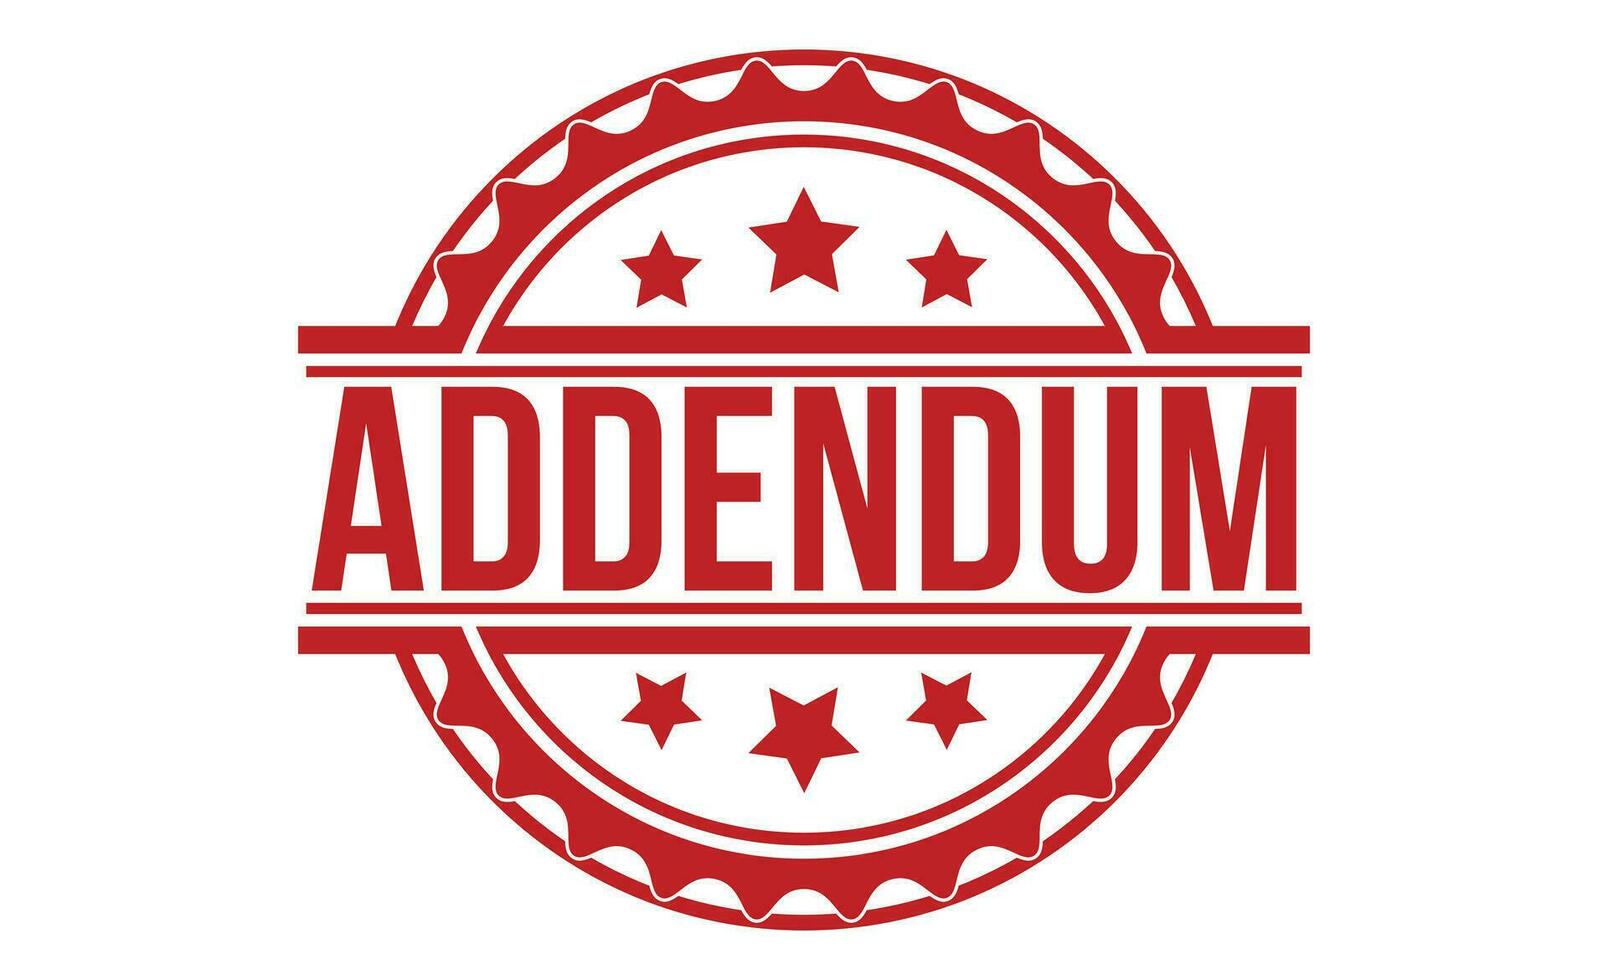 Addendum rubber stamp vector illustration on white background.